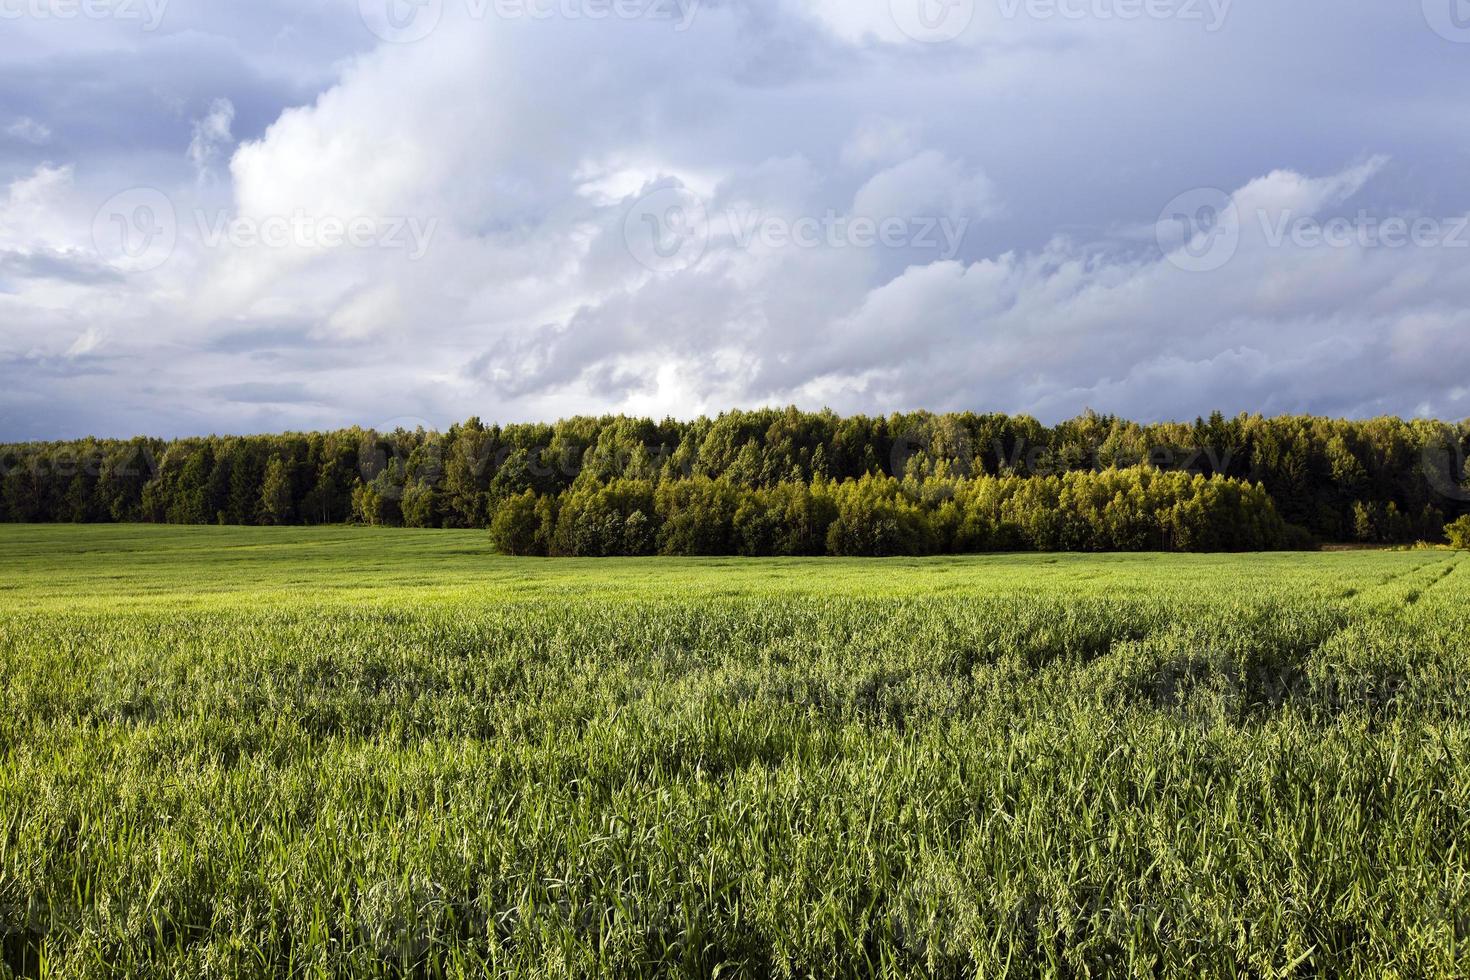 green oats in a field photo